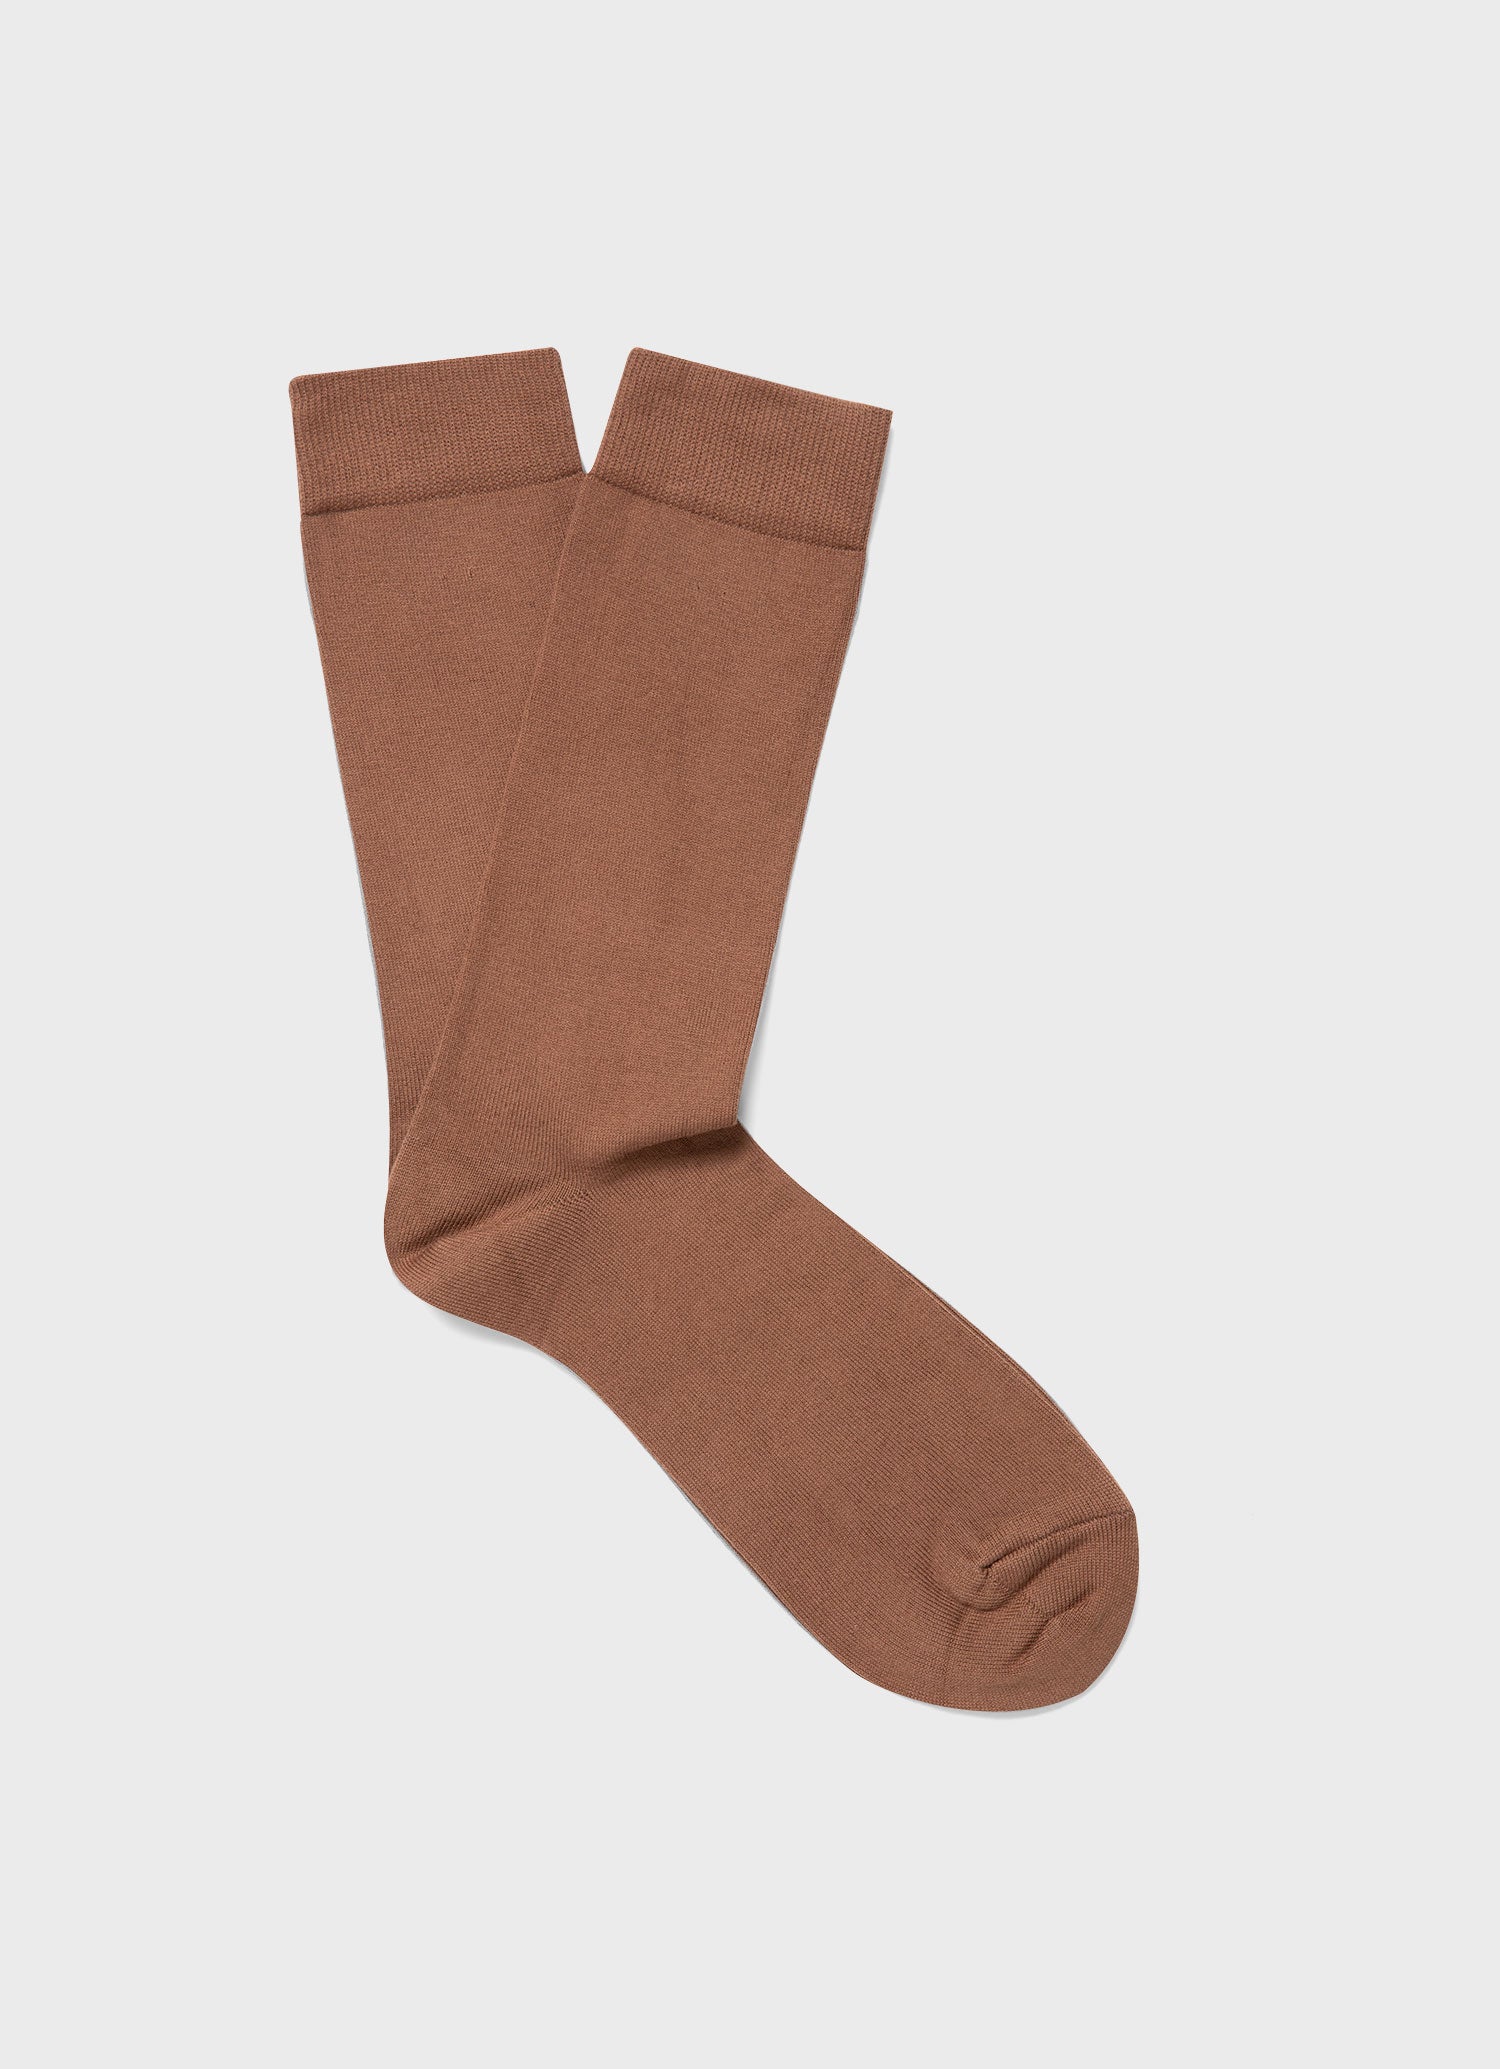 Men's Cotton Socks in Brown